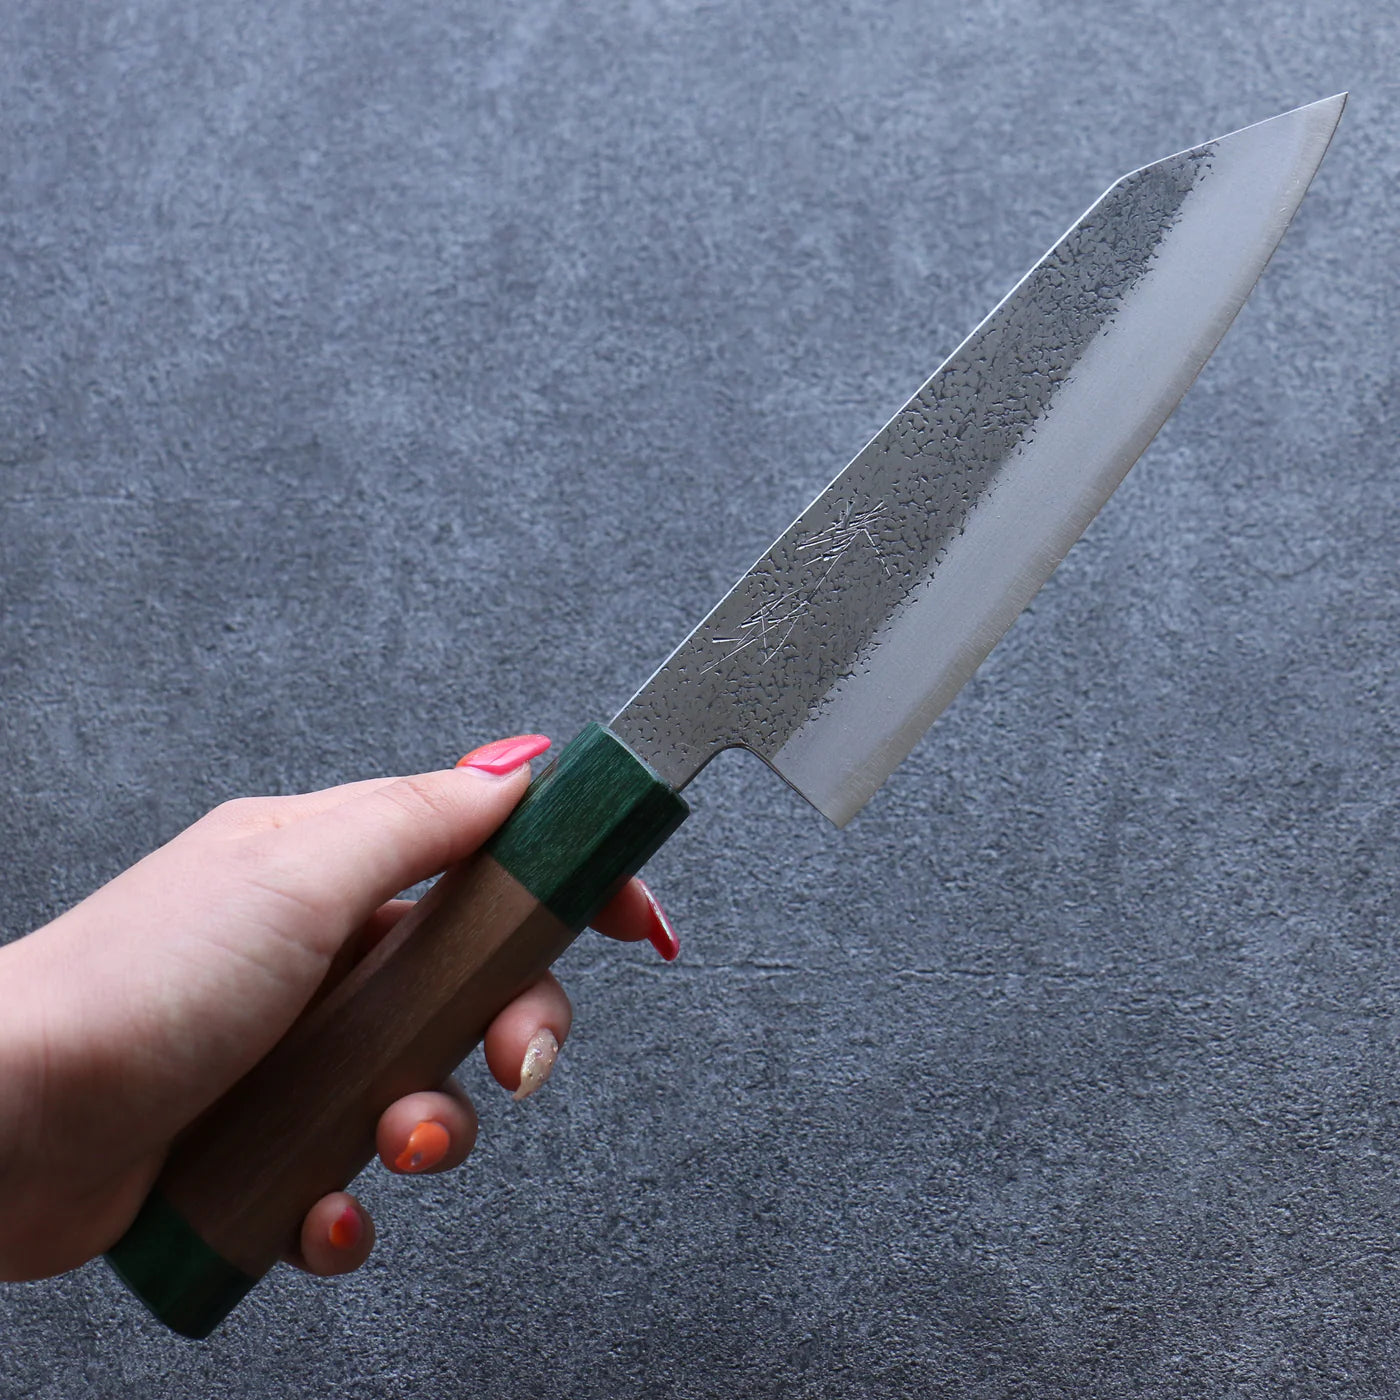 Marke Seisuke Superblaues handgeschmiedetes Stahlmesser Mehrzweckmesser Bunka Japanisches Messer 165 mm Griff aus Walnussholz (mit rotem Ring auf beiden Seiten) 